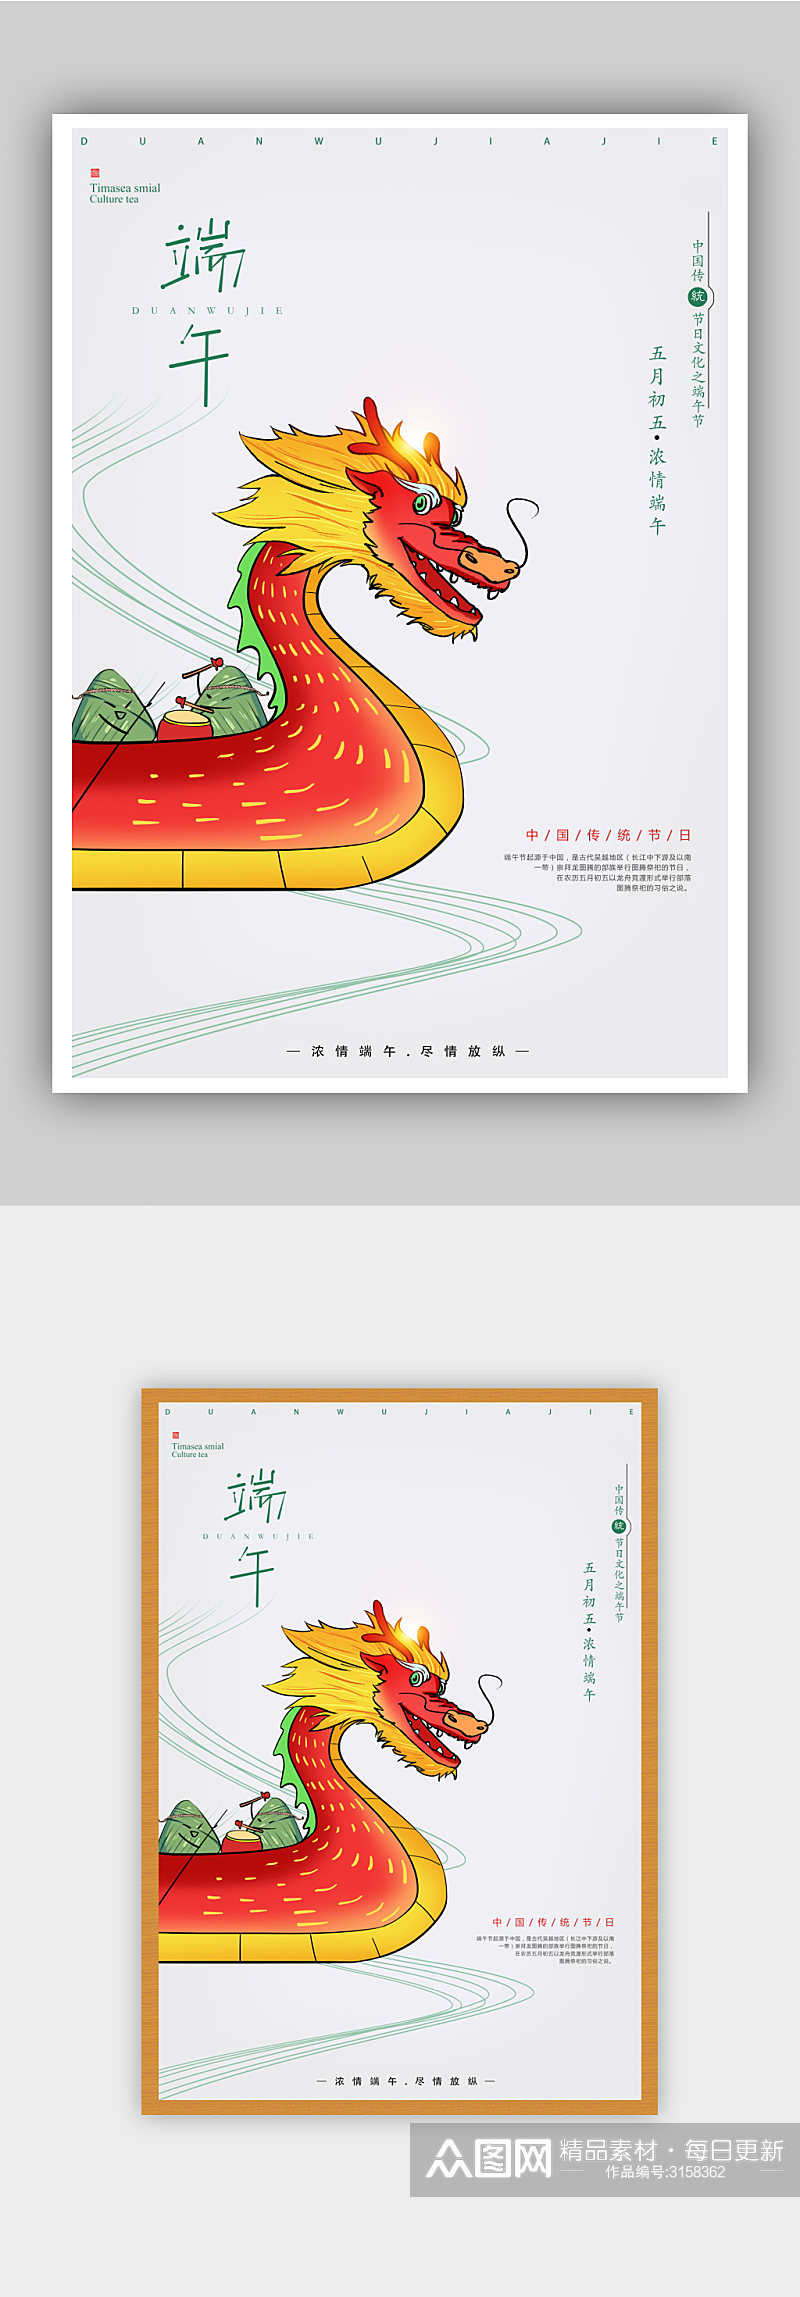 手绘中国龙端午节海报设素材